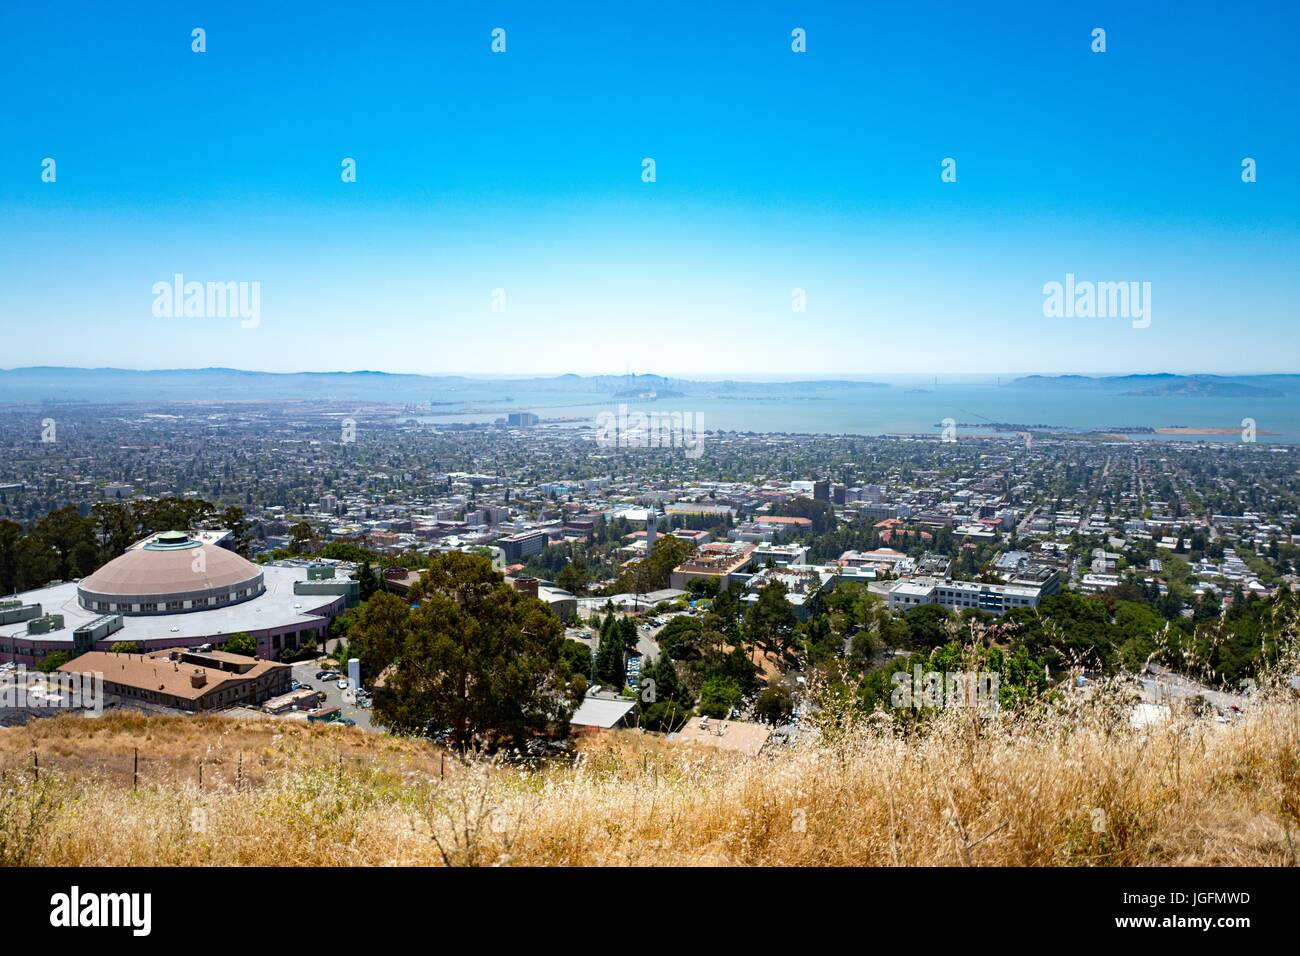 Luftaufnahme von Berkeley, Kalifornien aus Berkeley Hills, University of California, die Stadt Oakland und San Francisco Bay Bridge sichtbar, Berkeley, Kalifornien, 19. Juni 2017. Stockfoto